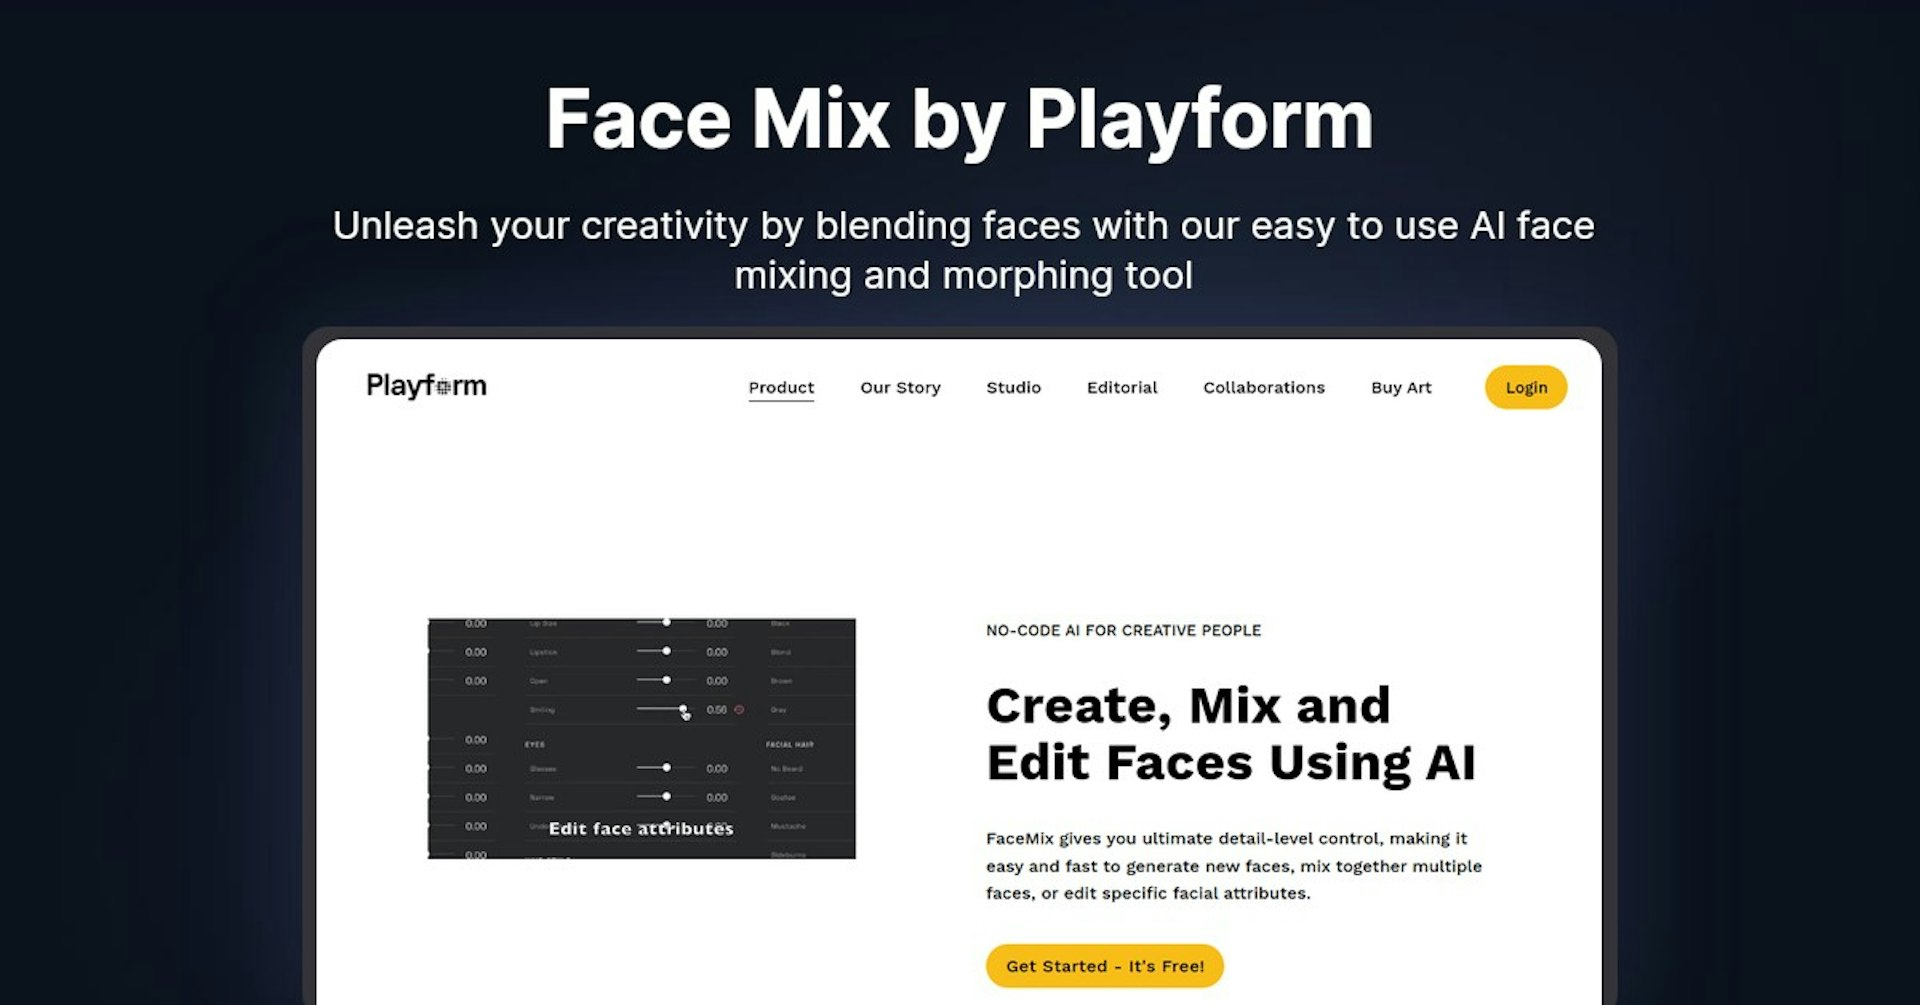 Face Mix by Playform